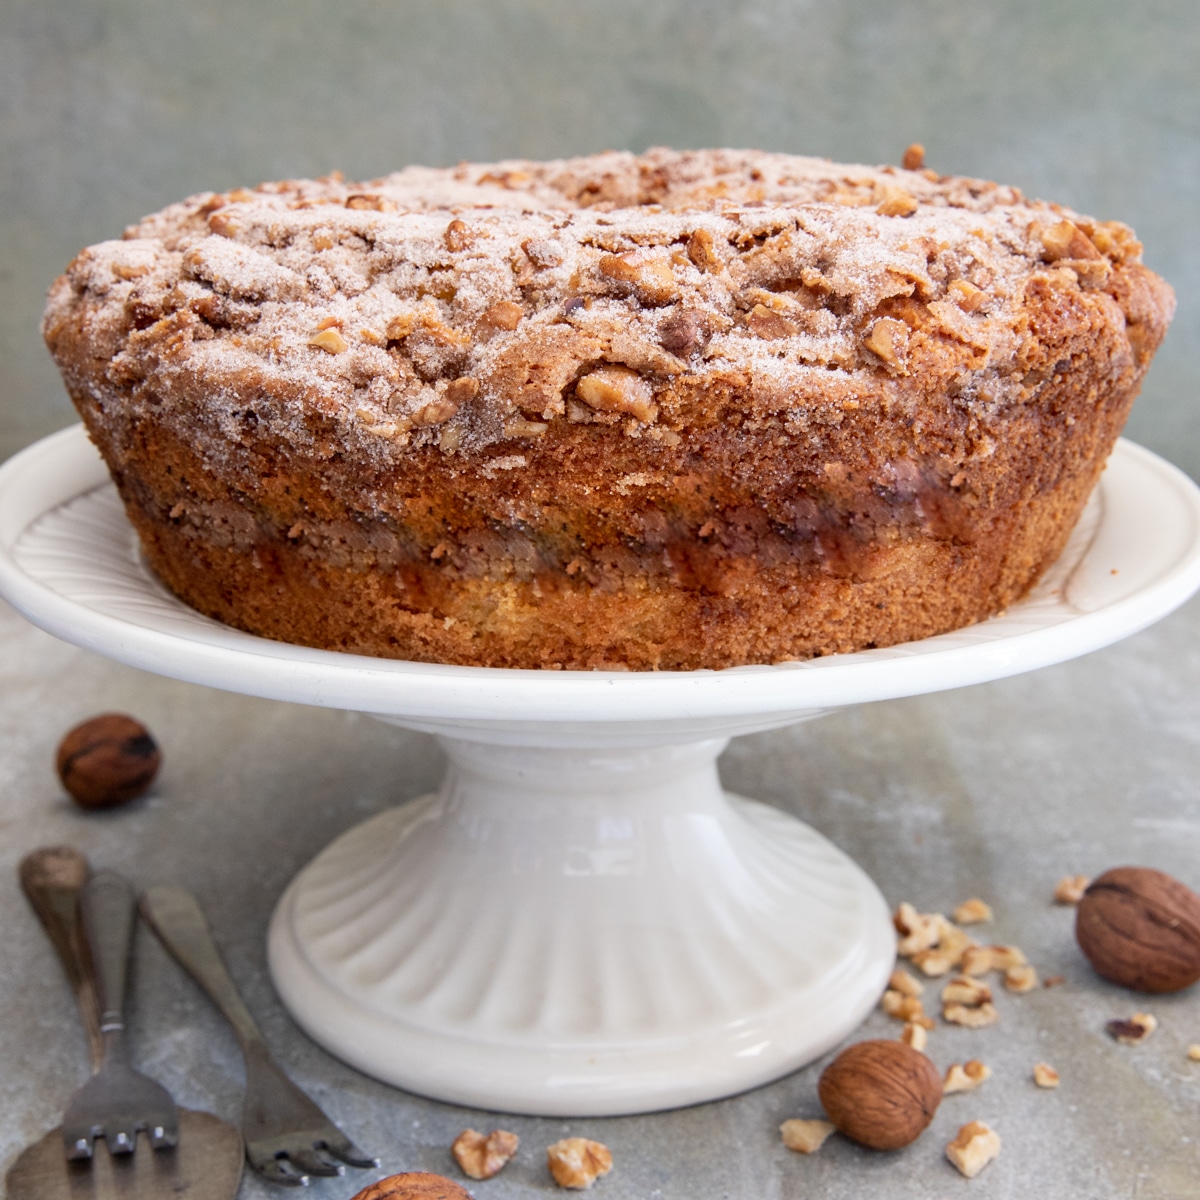 Martha's Classic Crumb Cake (So Moist!) | Bake or Break